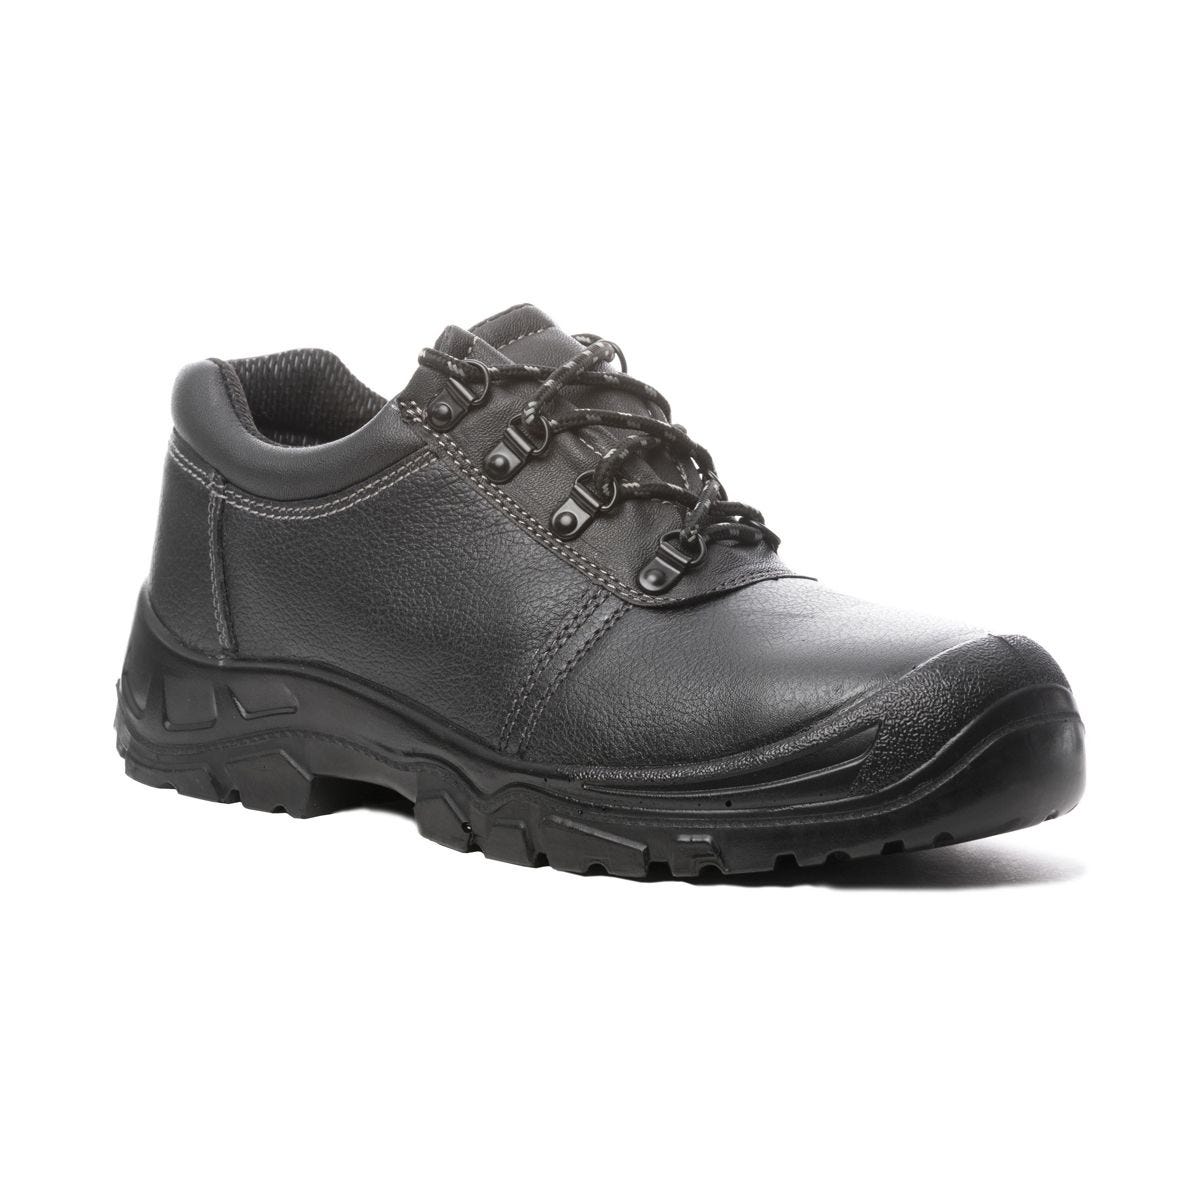 Chaussures de sécurité basses Azurite II S3 ESD noir - Coverguard - Taille 44 2